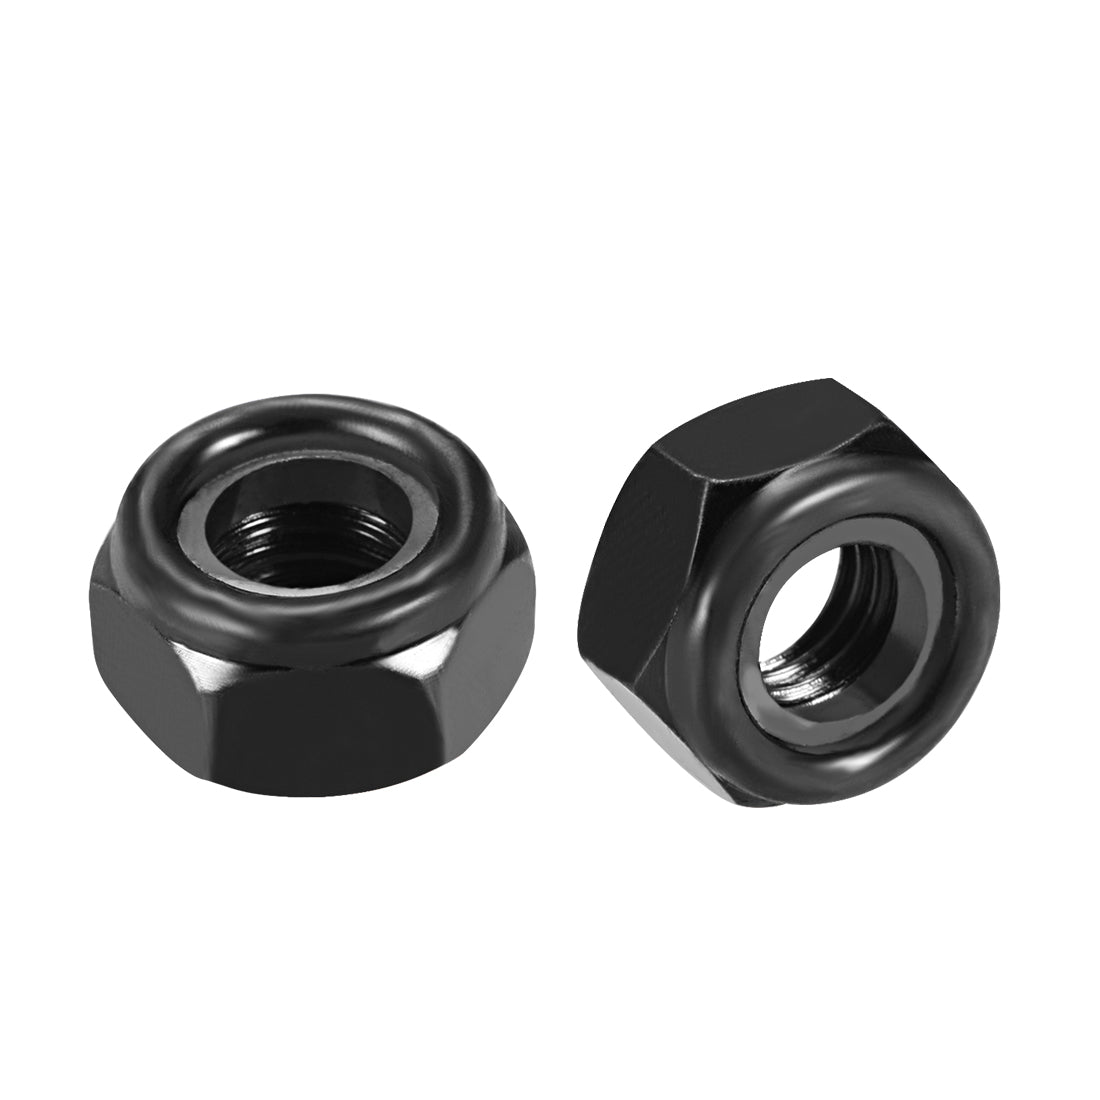 uxcell Uxcell M10x1.5mm Hex Lock Nuts Carbon Steel Nylon Insert Self-Lock Nuts, 20Pcs Black